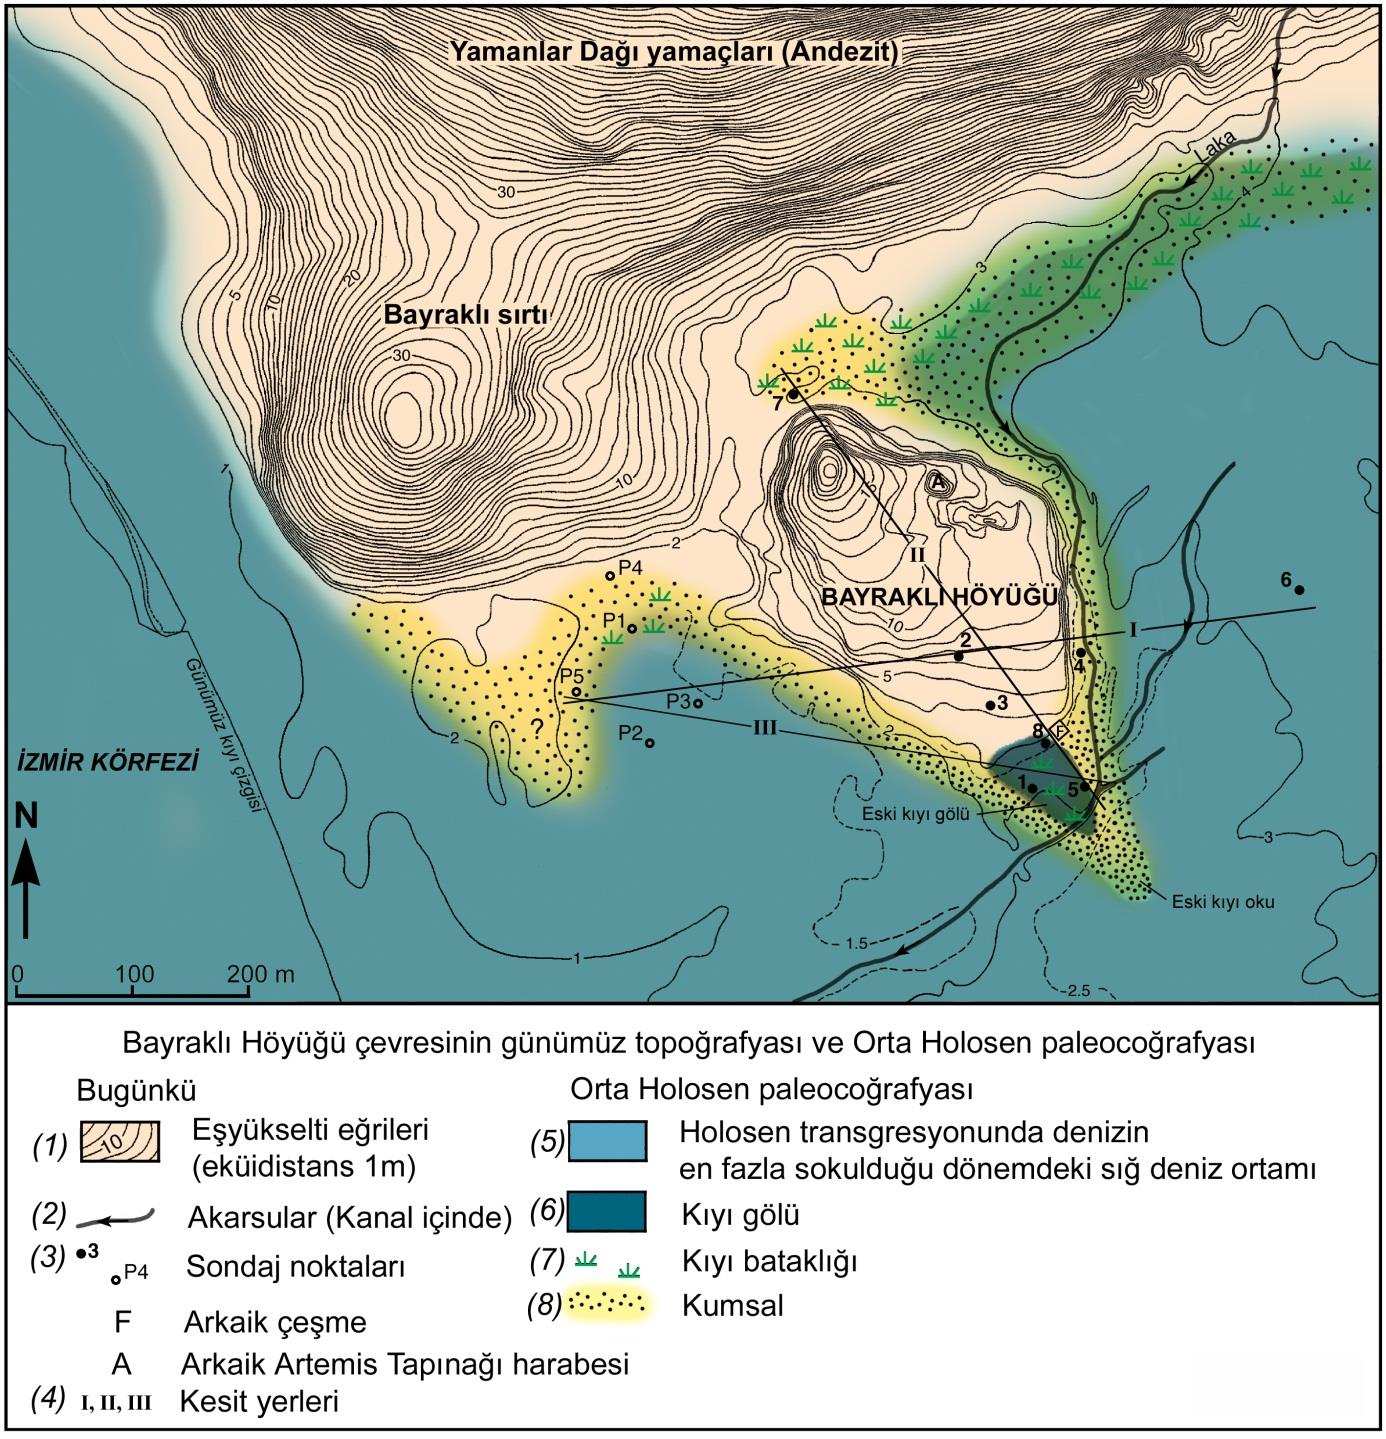 Bayraklı Höyüğü (İzmir) Çevresinin Holosen deki Jeomorfolojik Gelişimi Holocene Geomorphological Evolution of Coastal Environment Around Bayraklı Mound (İzmir) 147 Şekil 3.